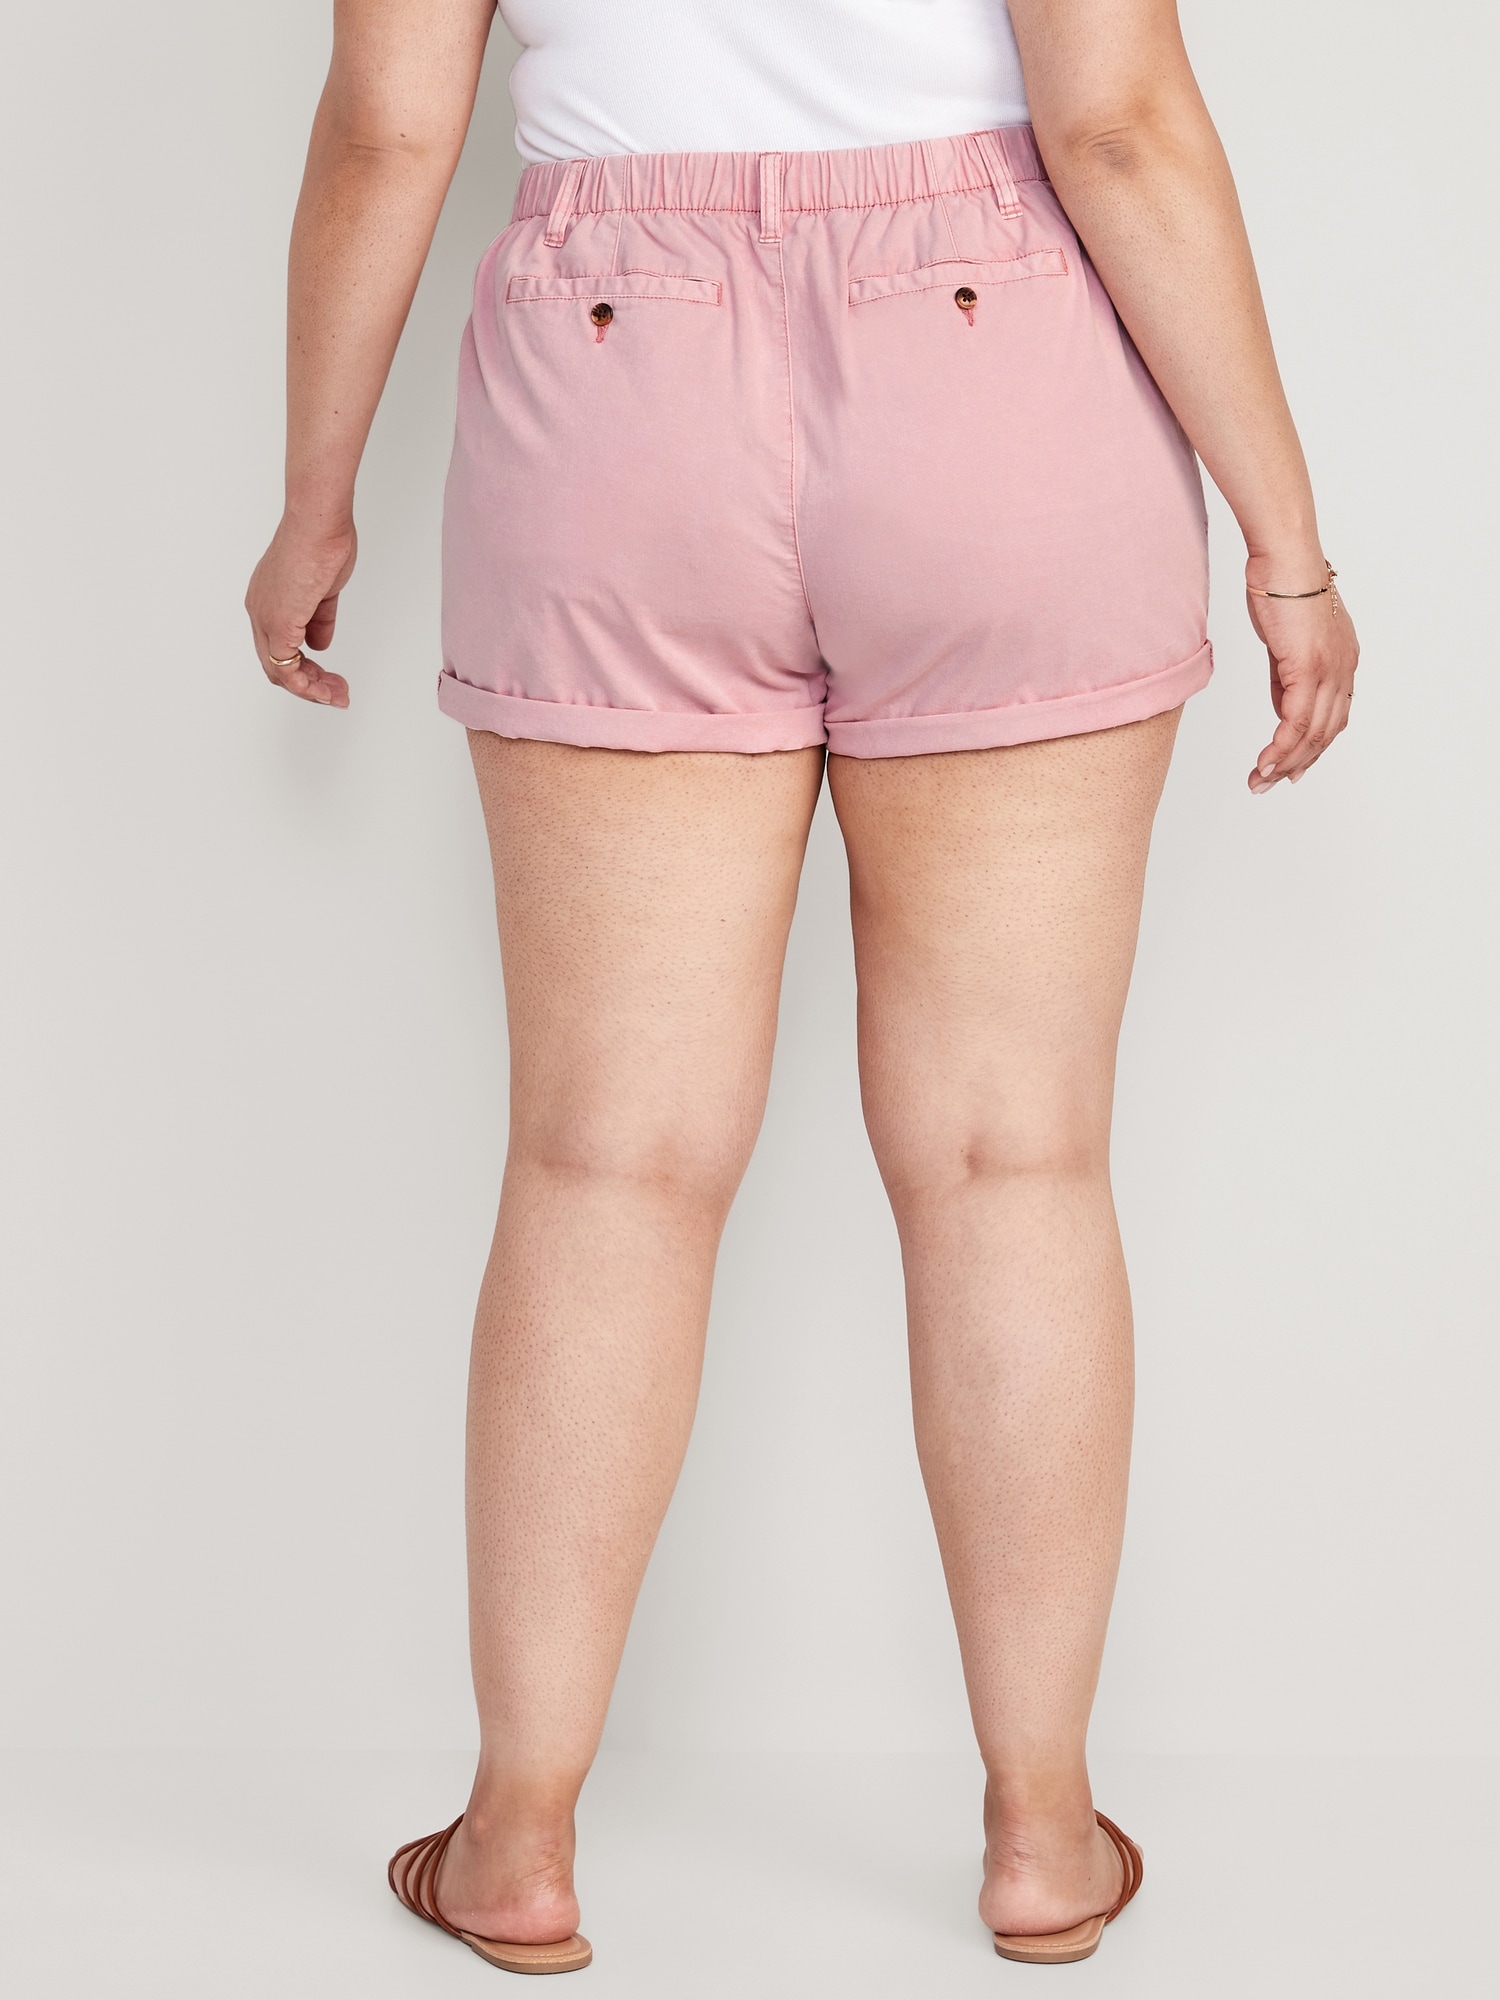 Women's Shorts — Papi Chulo's